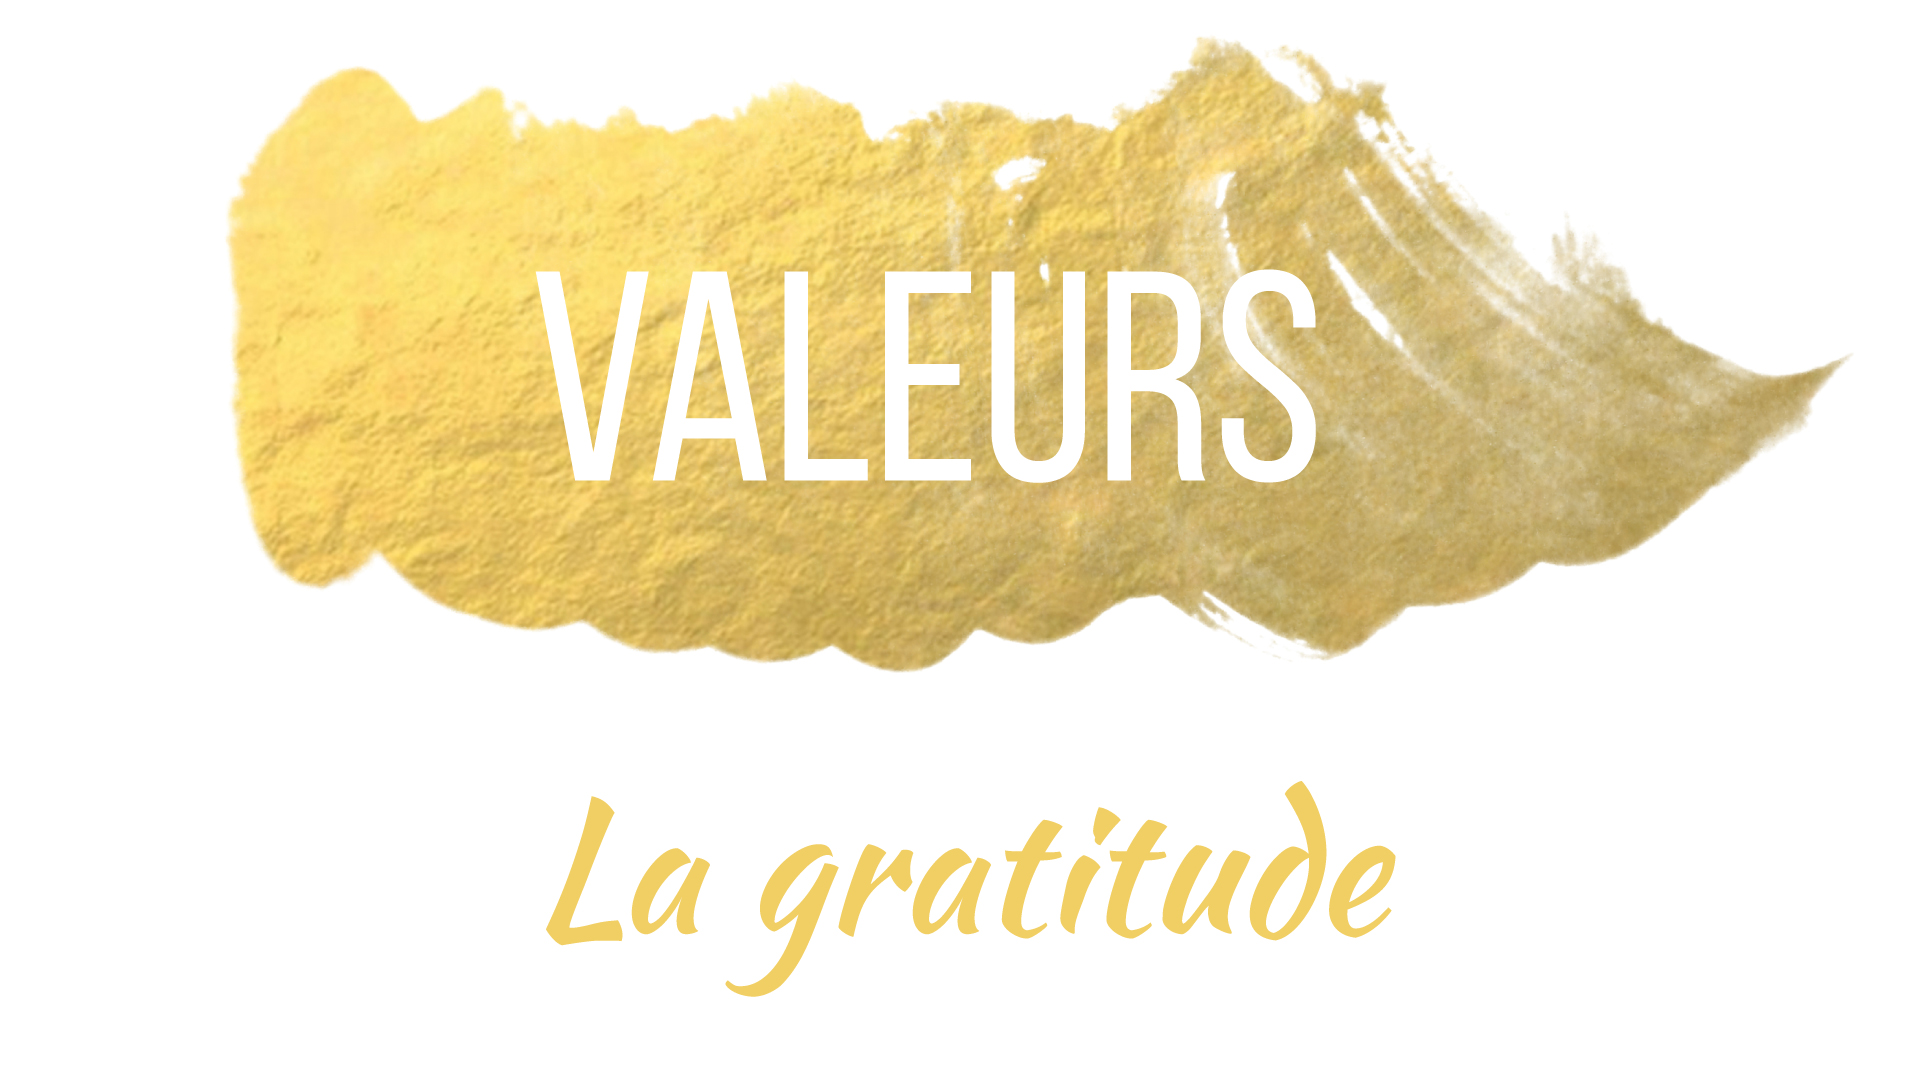 Valeurs - La gratitude